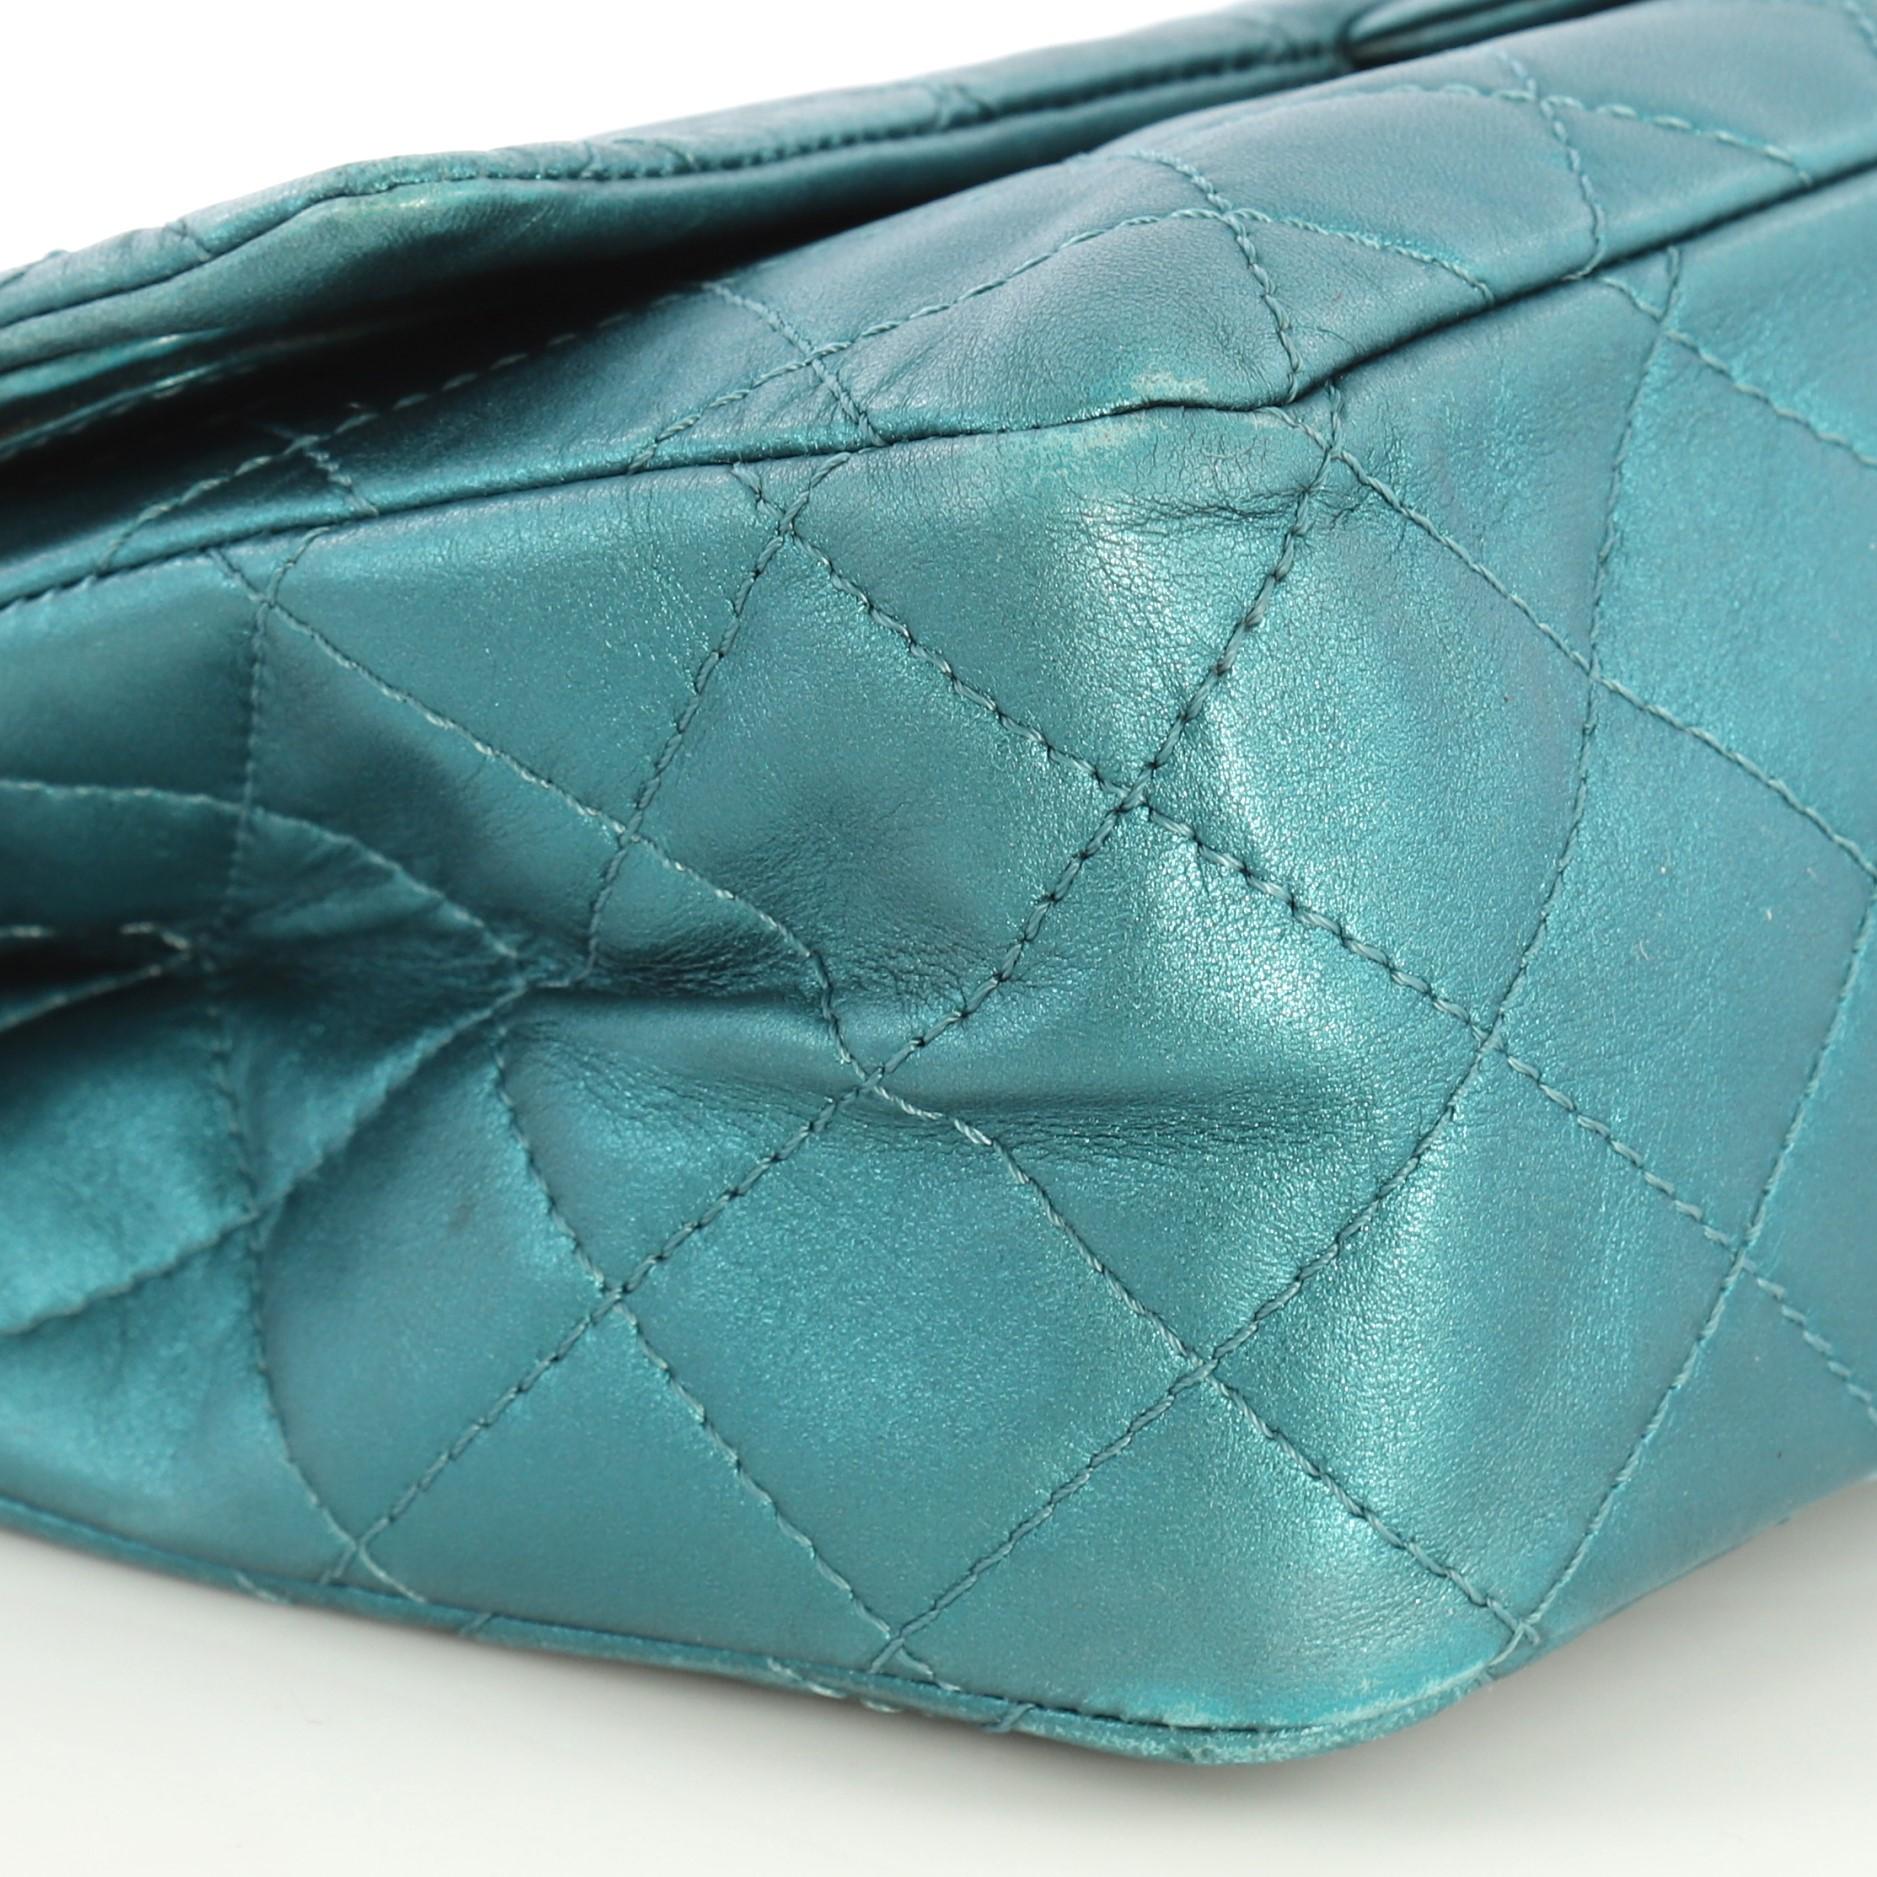 Chanel Reissue 2.55 Handbag Quilted Metallic Aged Calfskin 227 2